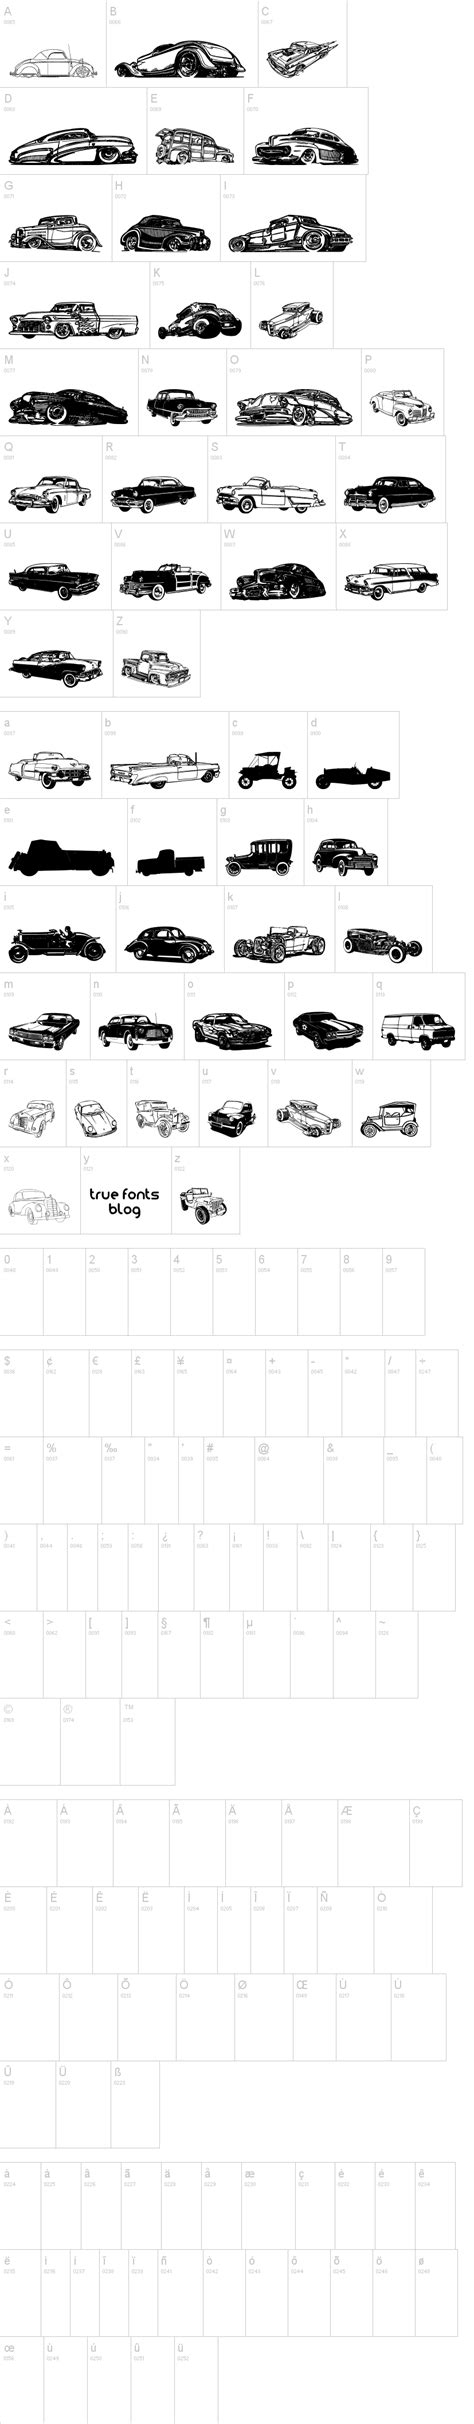 Aprender Acerca 66 Imagen Tipografia De Cars Dafont Viaterramx